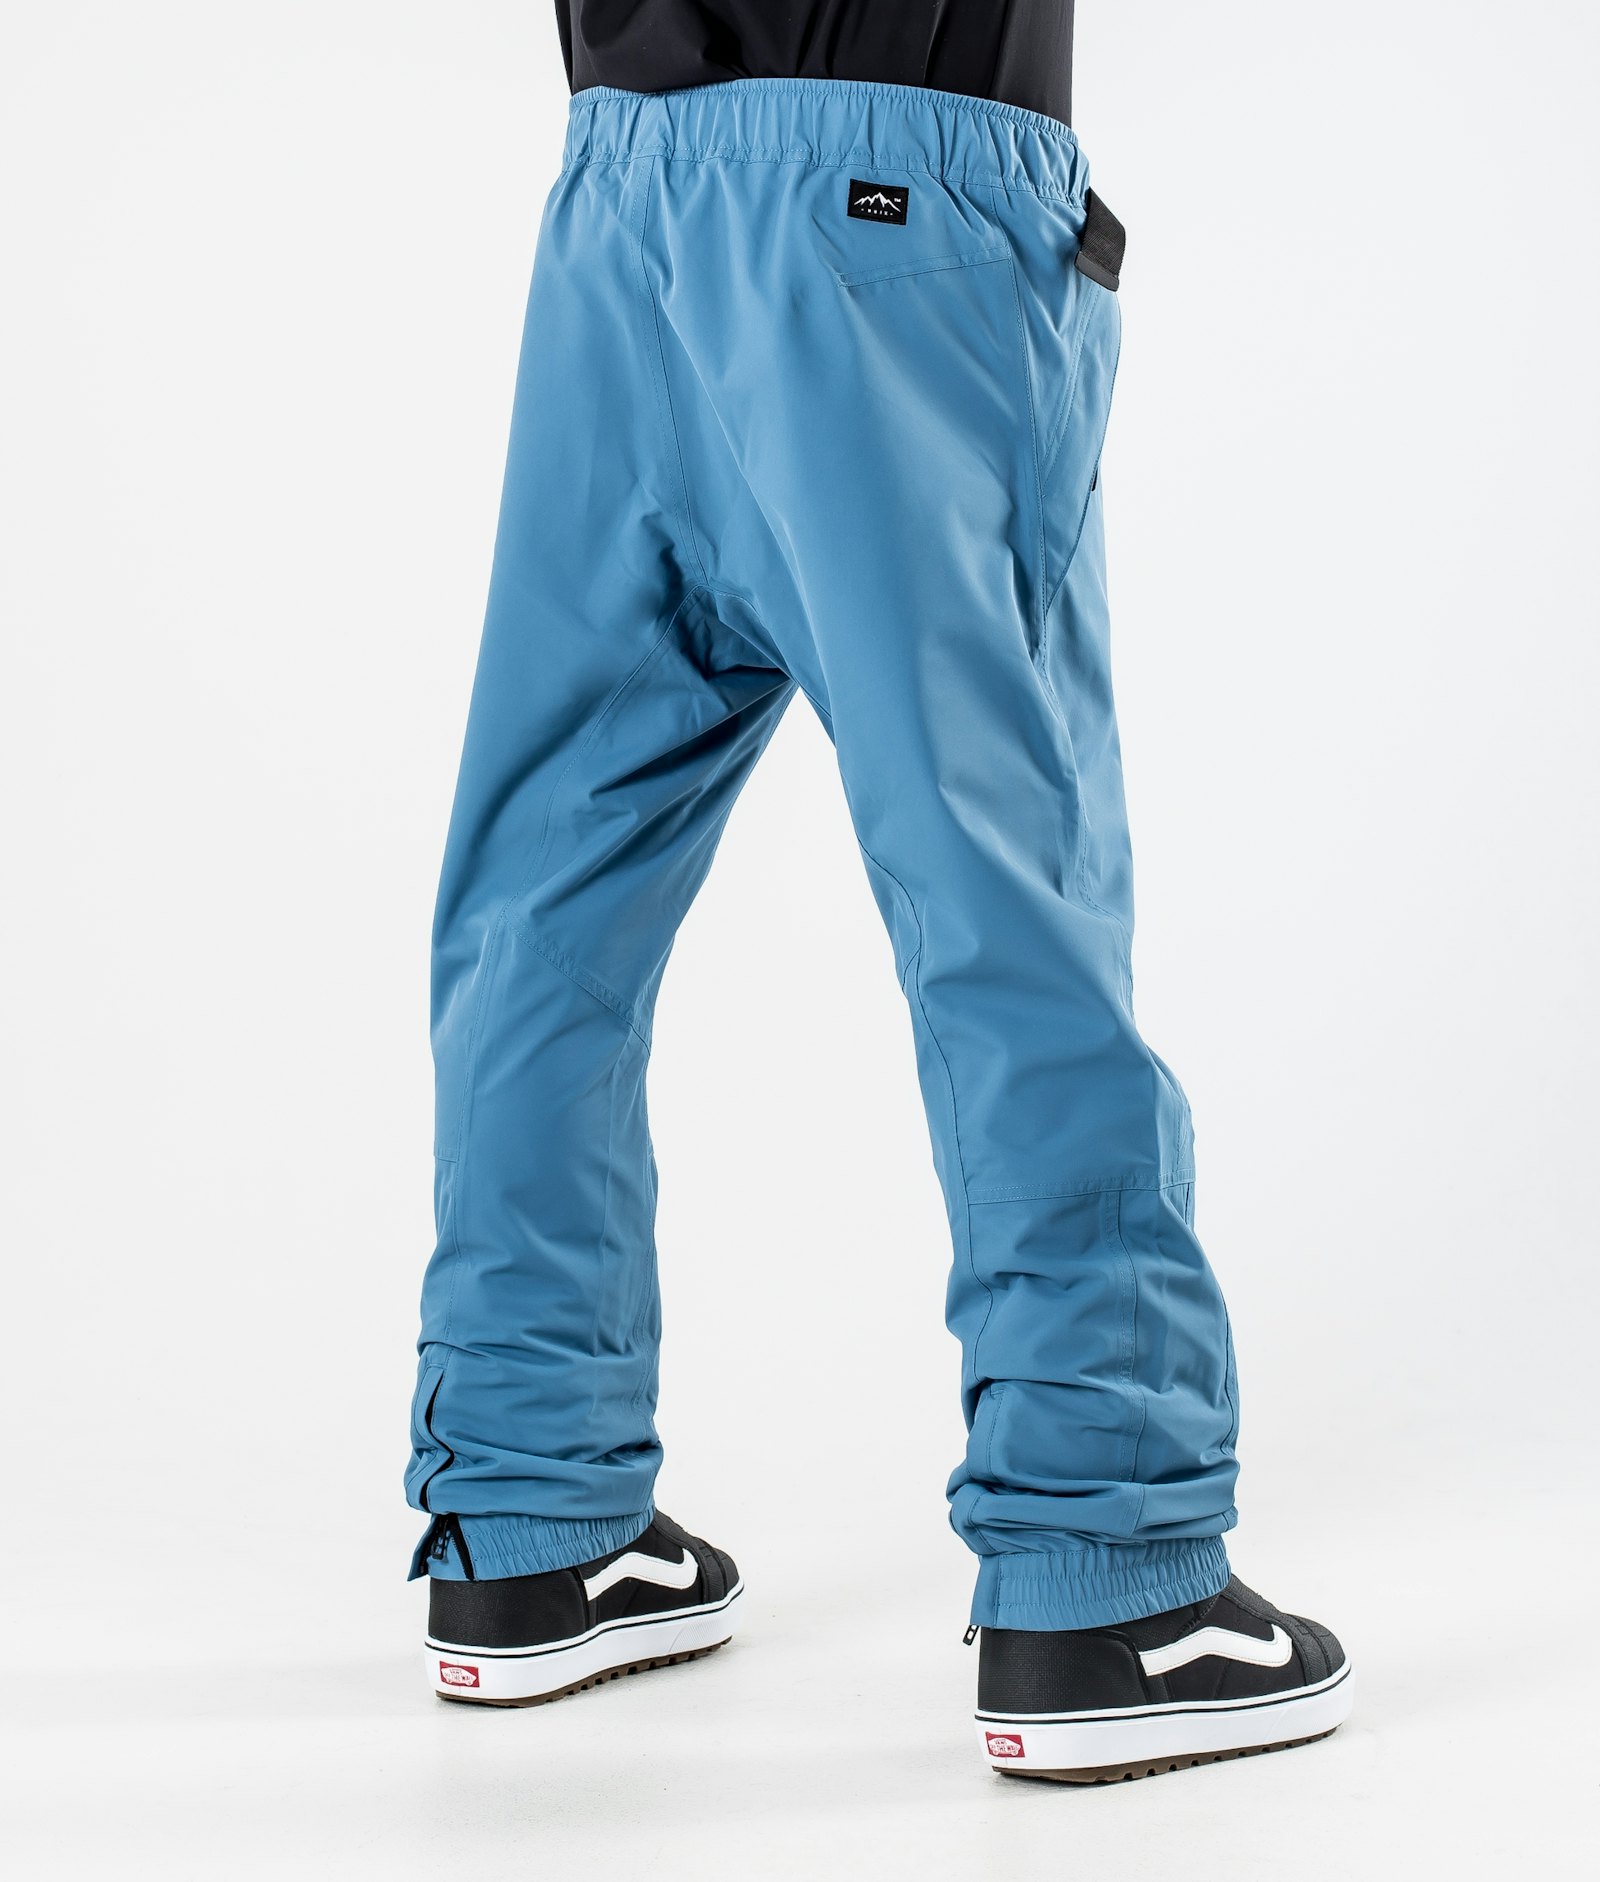 Blizzard 2020 Snowboard Pants Men Blue Steel